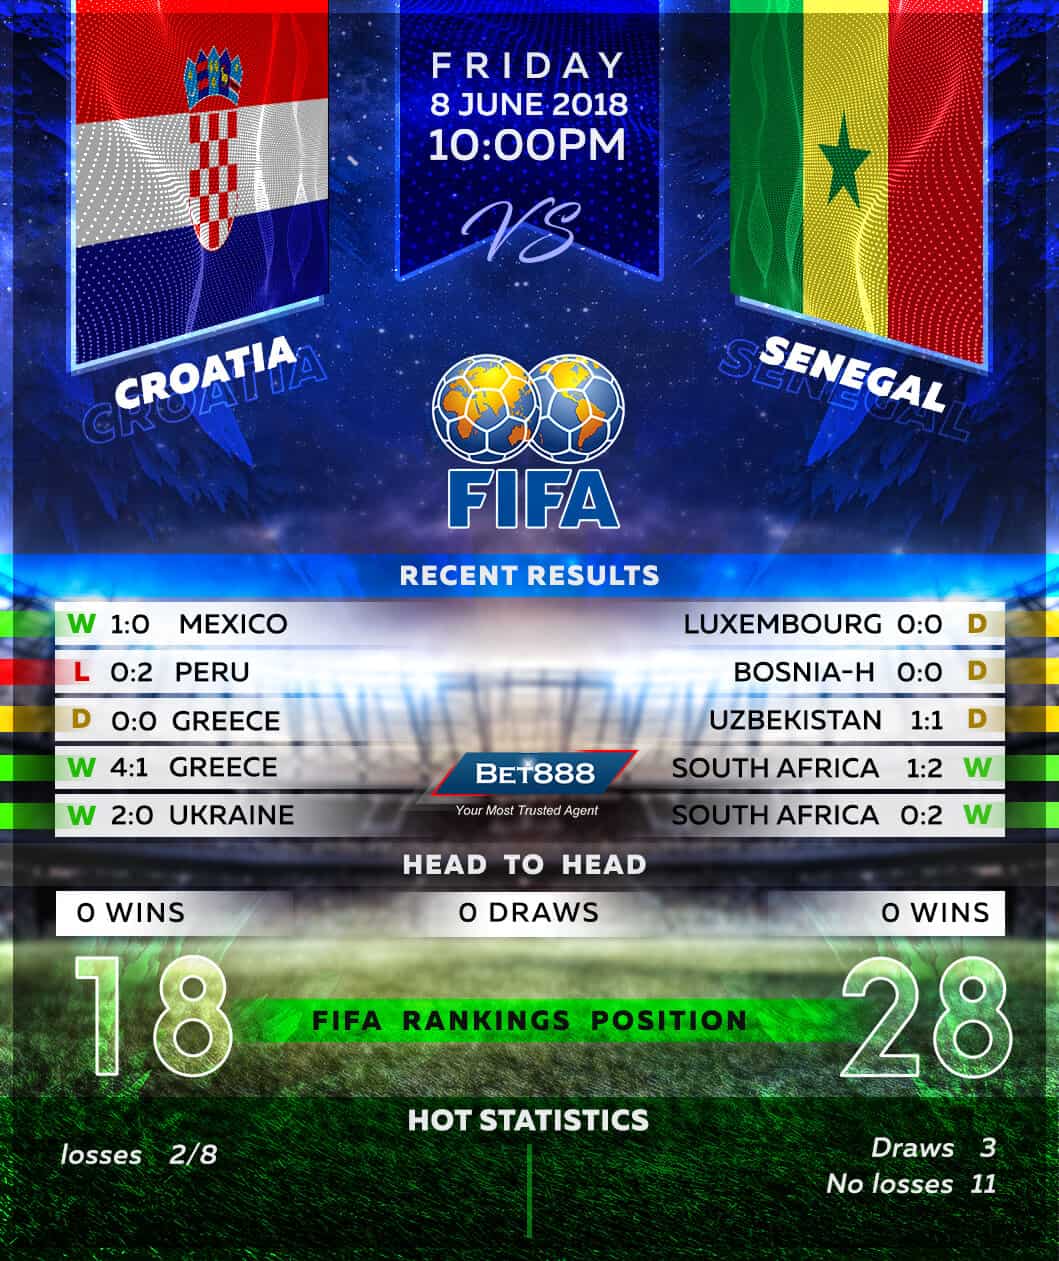 Croatia vs Senegal 08/06/18